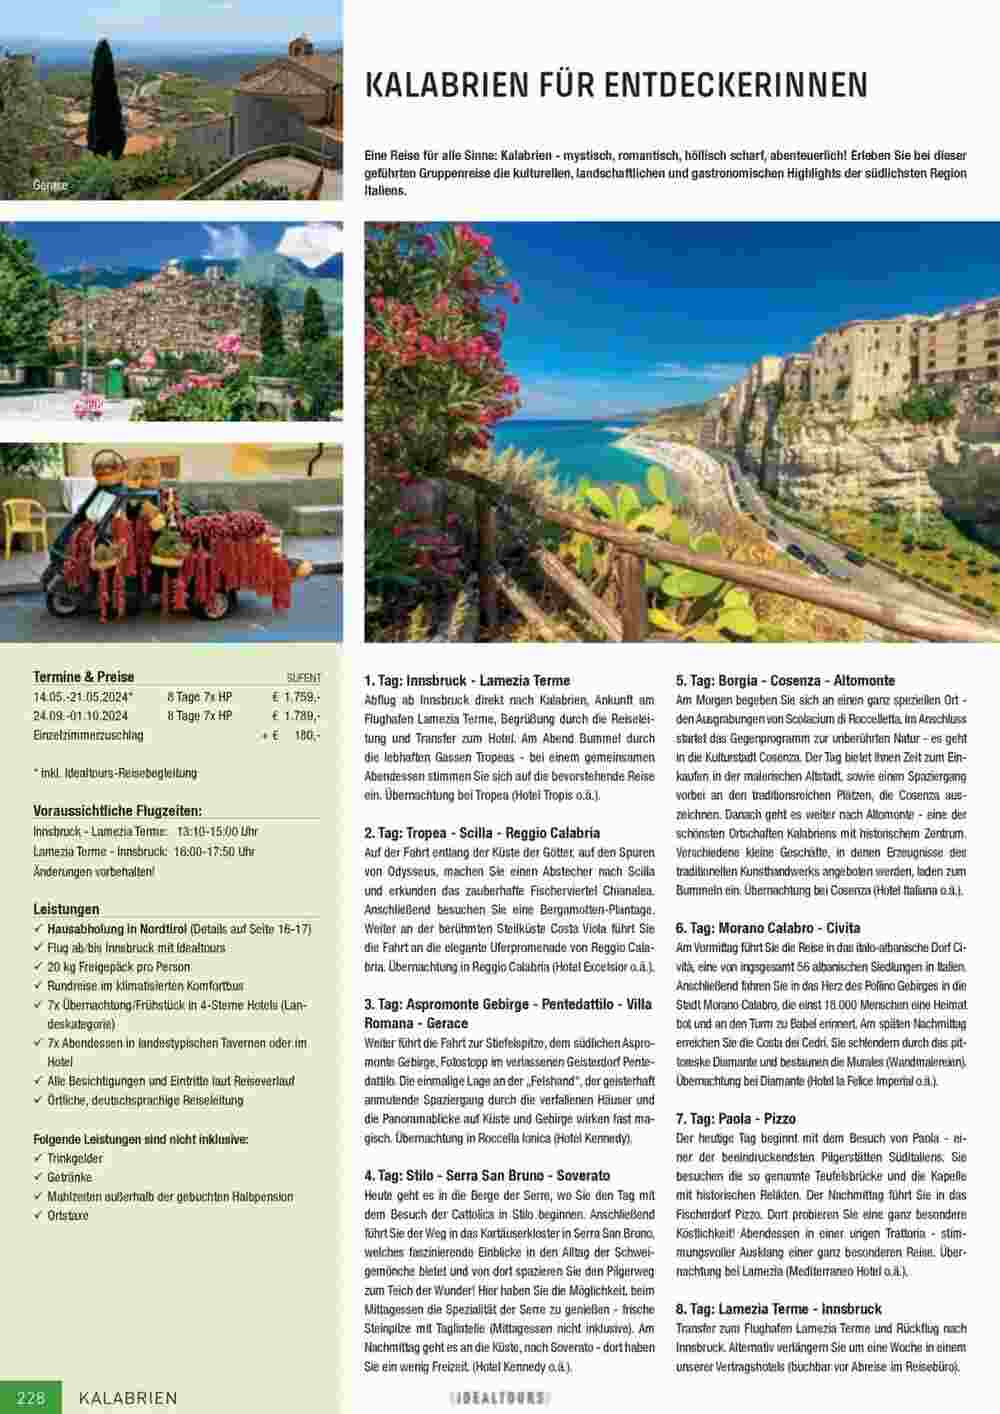 Idealtours Flugblatt (ab 15.11.2023) - Angebote und Prospekt - Seite 228